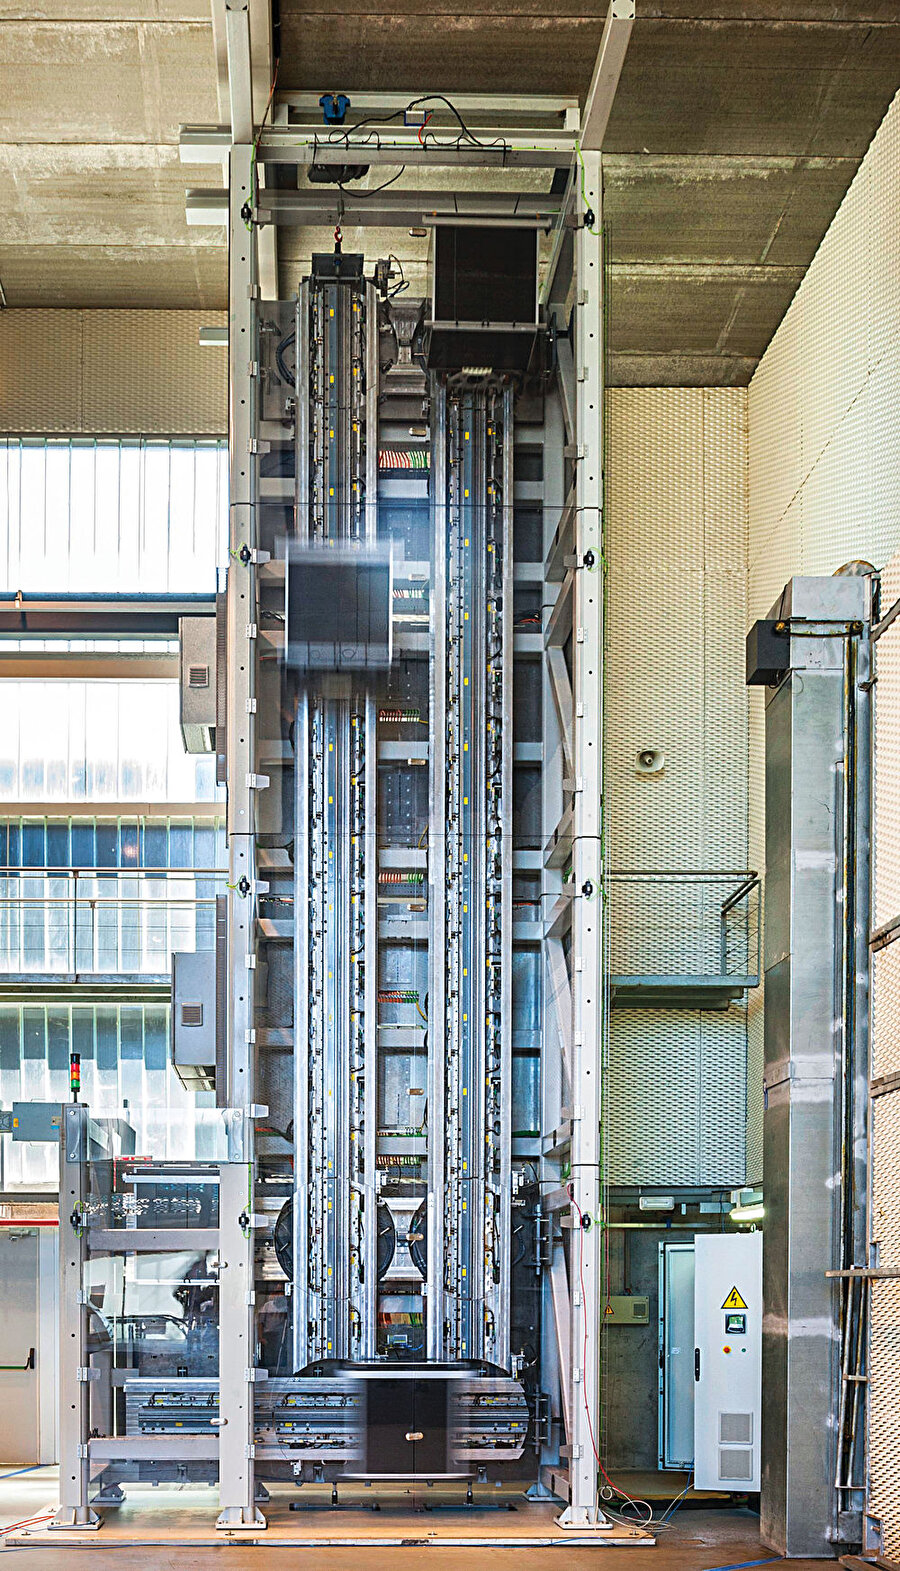 Multielevator - Her yöne gidebilen asansör

                                    Bu asansörler sadece dikey bir şekilde değil aynı zamanda yatay ve çapraz olarak da hareket edebiliyor. Amaç: Asansörlerin kapladığı alanı azaltmak ve sınırlarını genişletmek.
                                